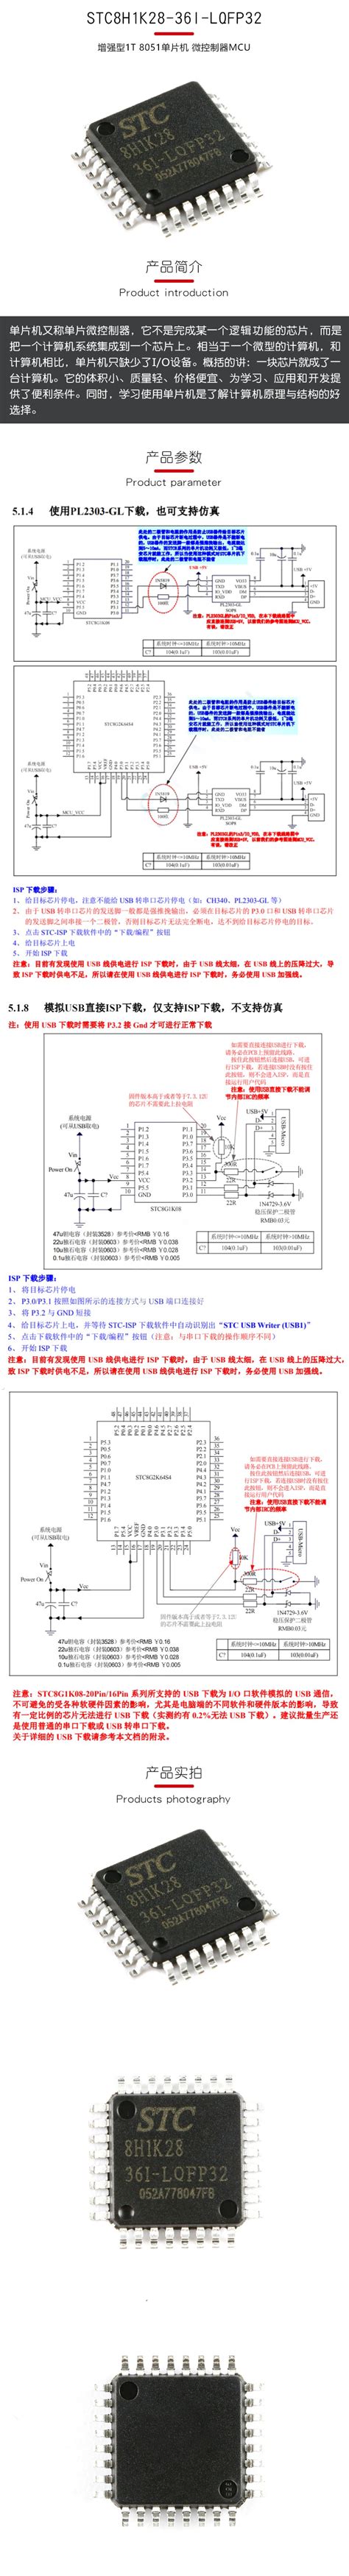 屠龙刀-开源示波器-STC32G12K128-LQFP64转DIP64核心功能学习板 - 51单片机